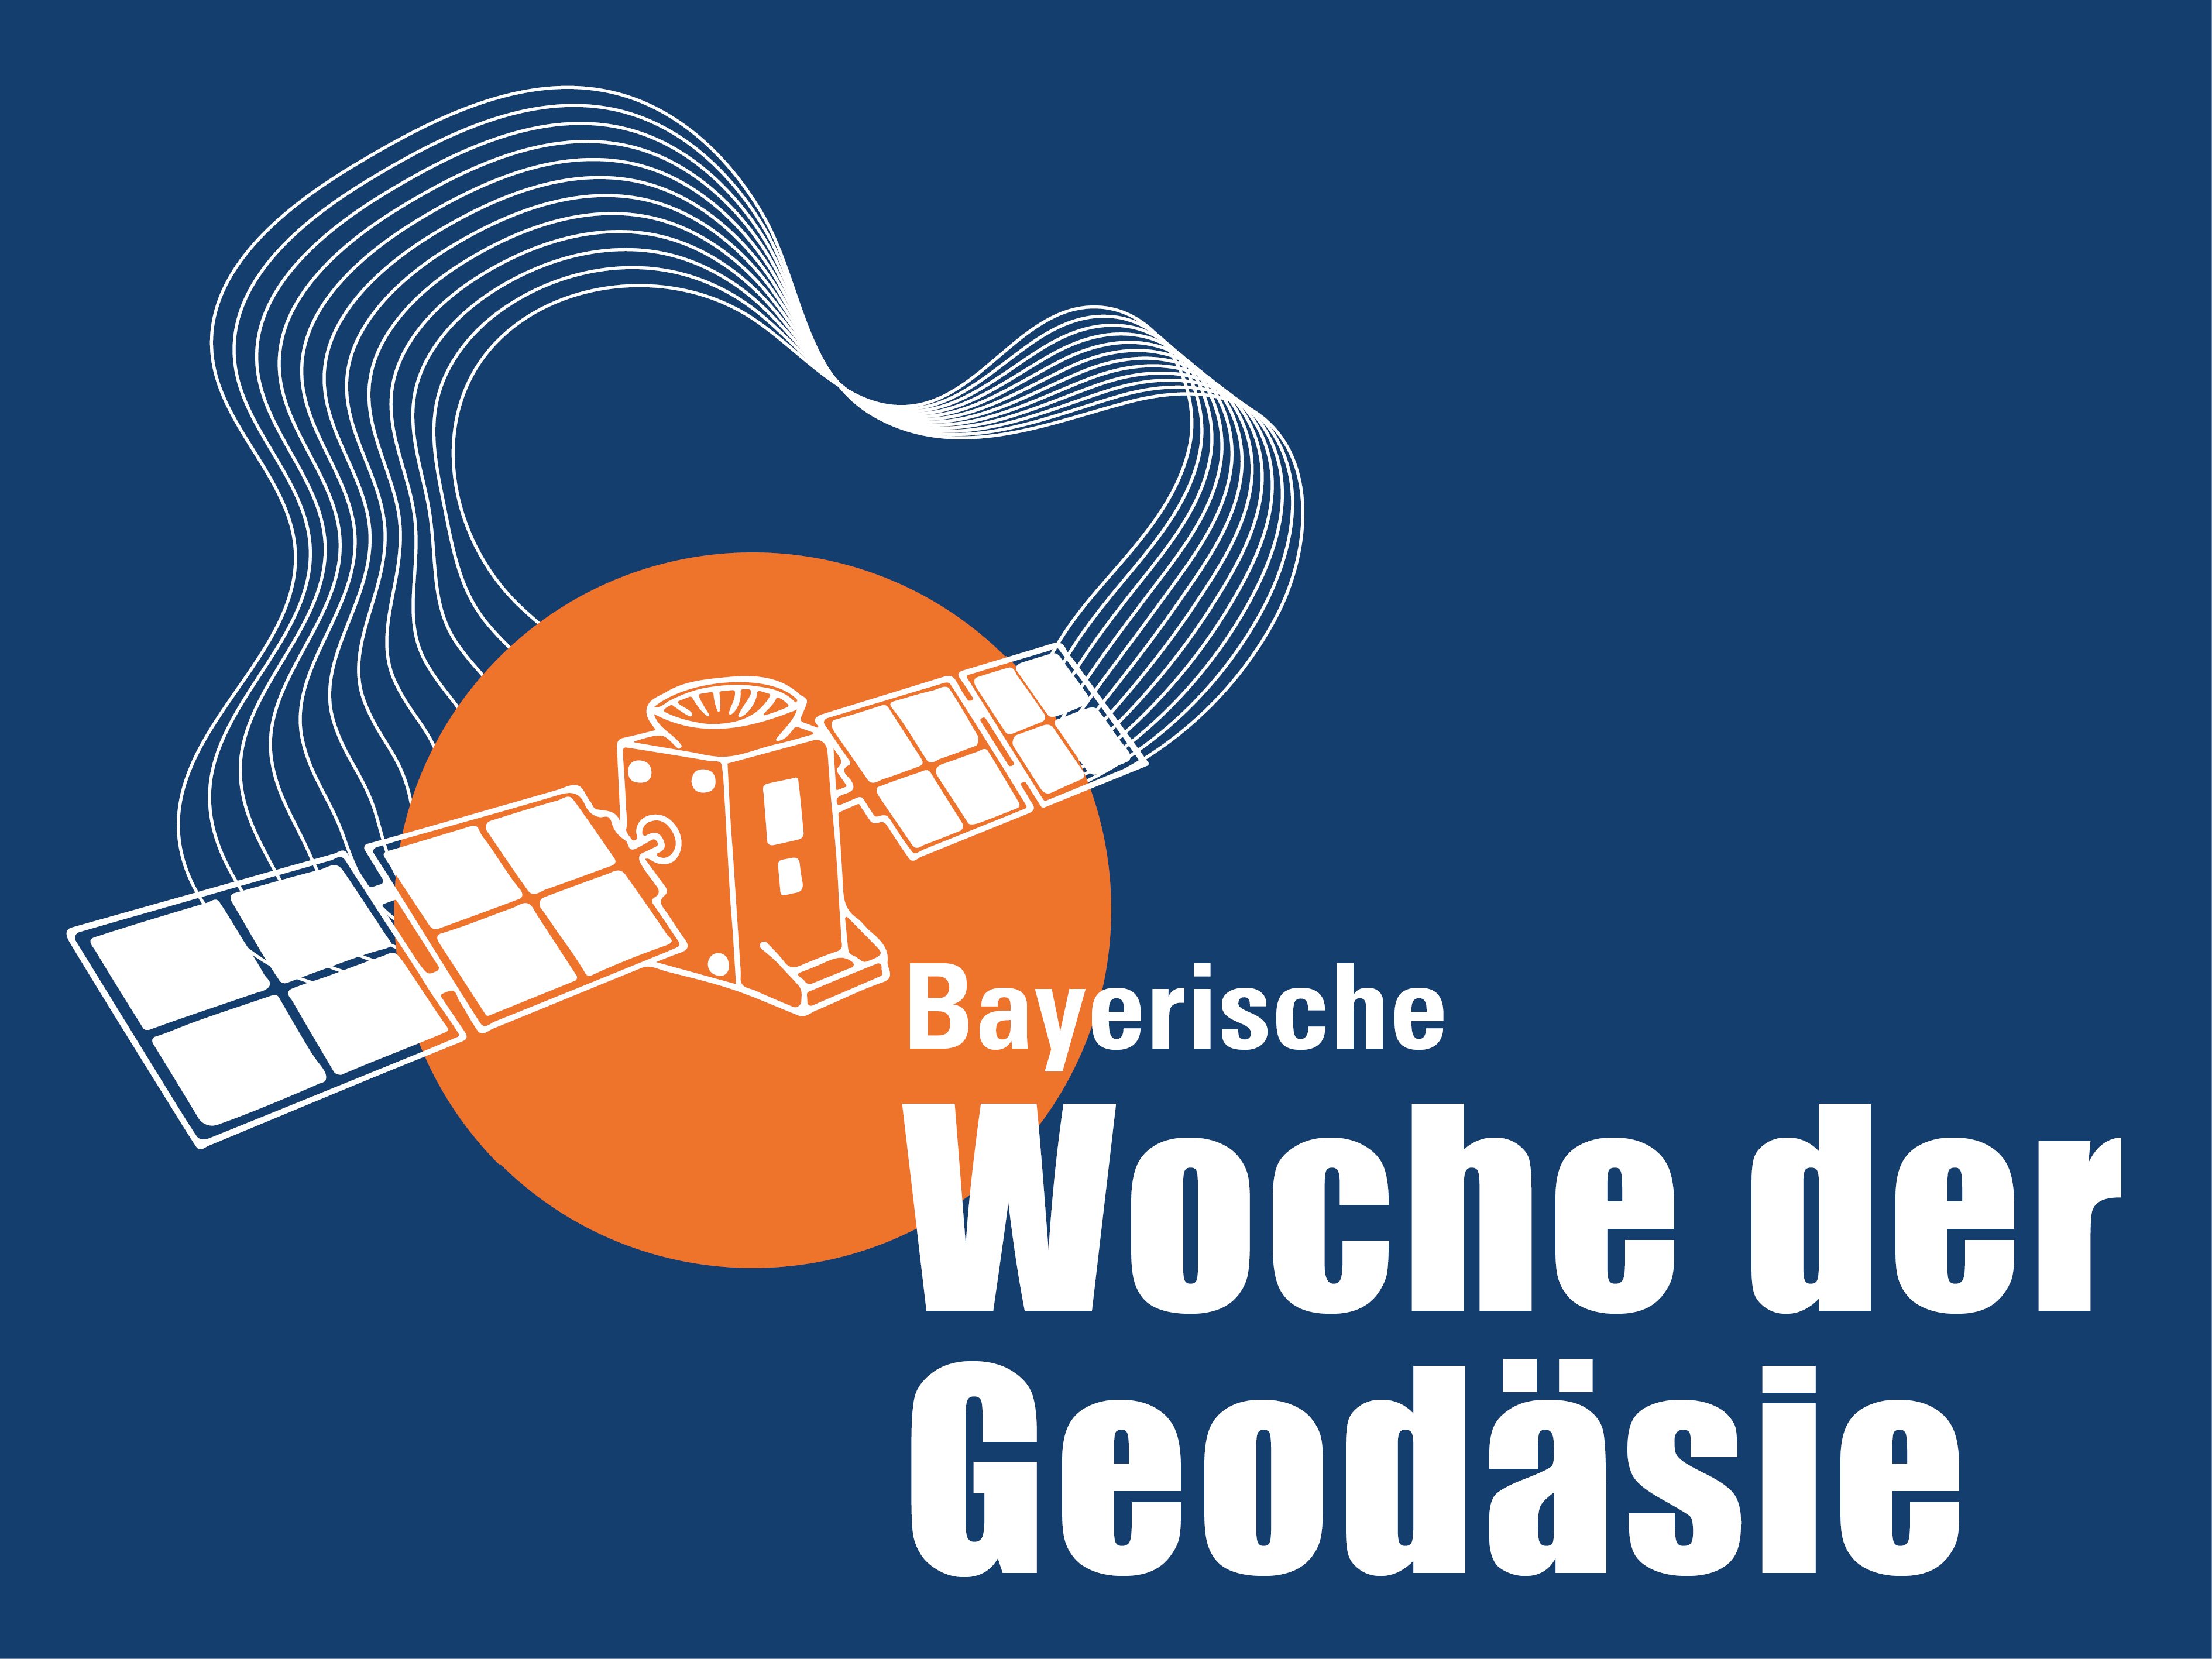 Bayerische Woche der Geodäsie